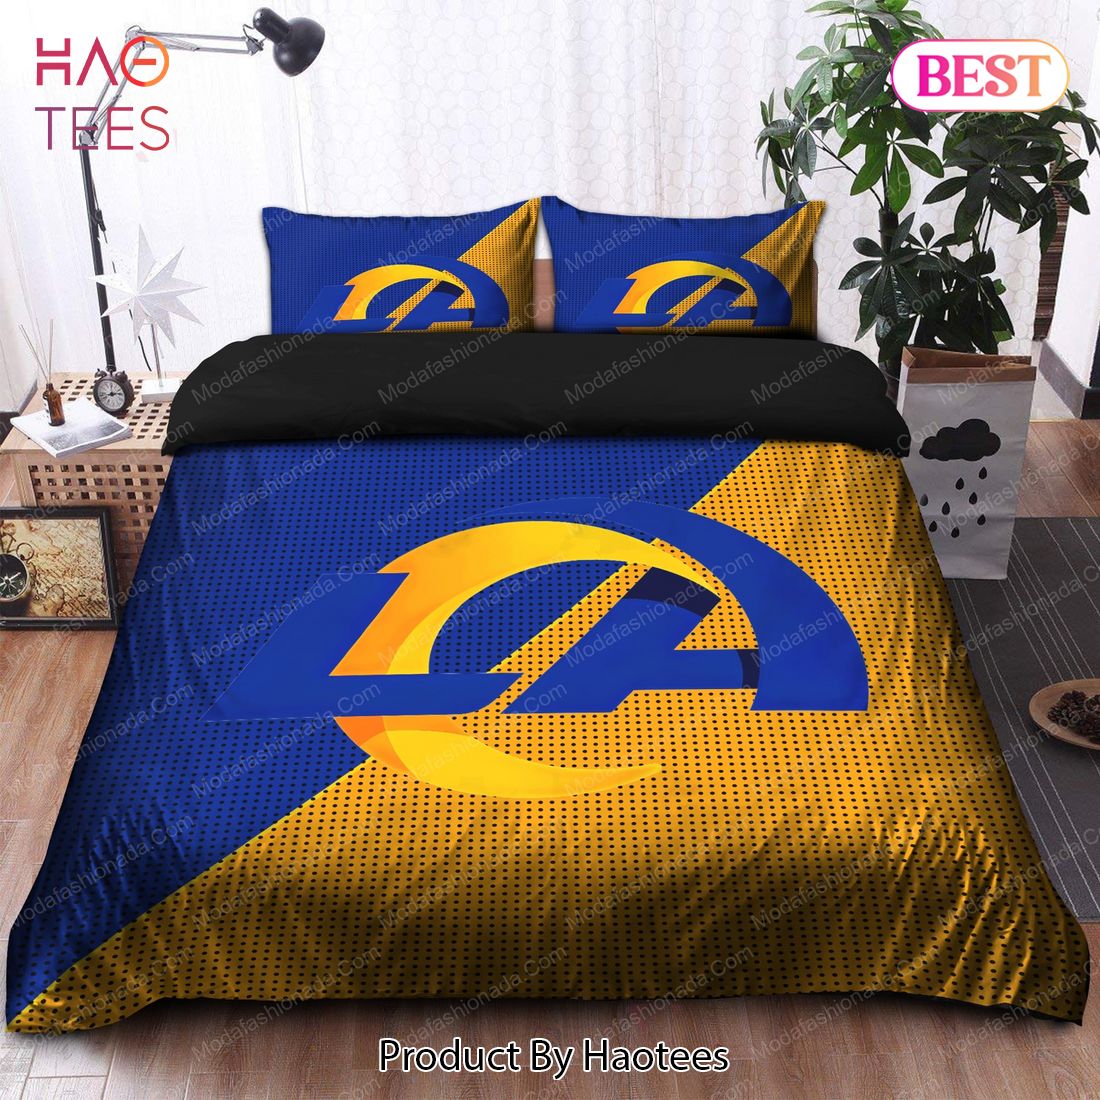 Buy Los Angeles Rams Logo Bedding Sets Bed Sets, Bedroom Sets, Comforter Sets, Duvet Cover, Bedspread